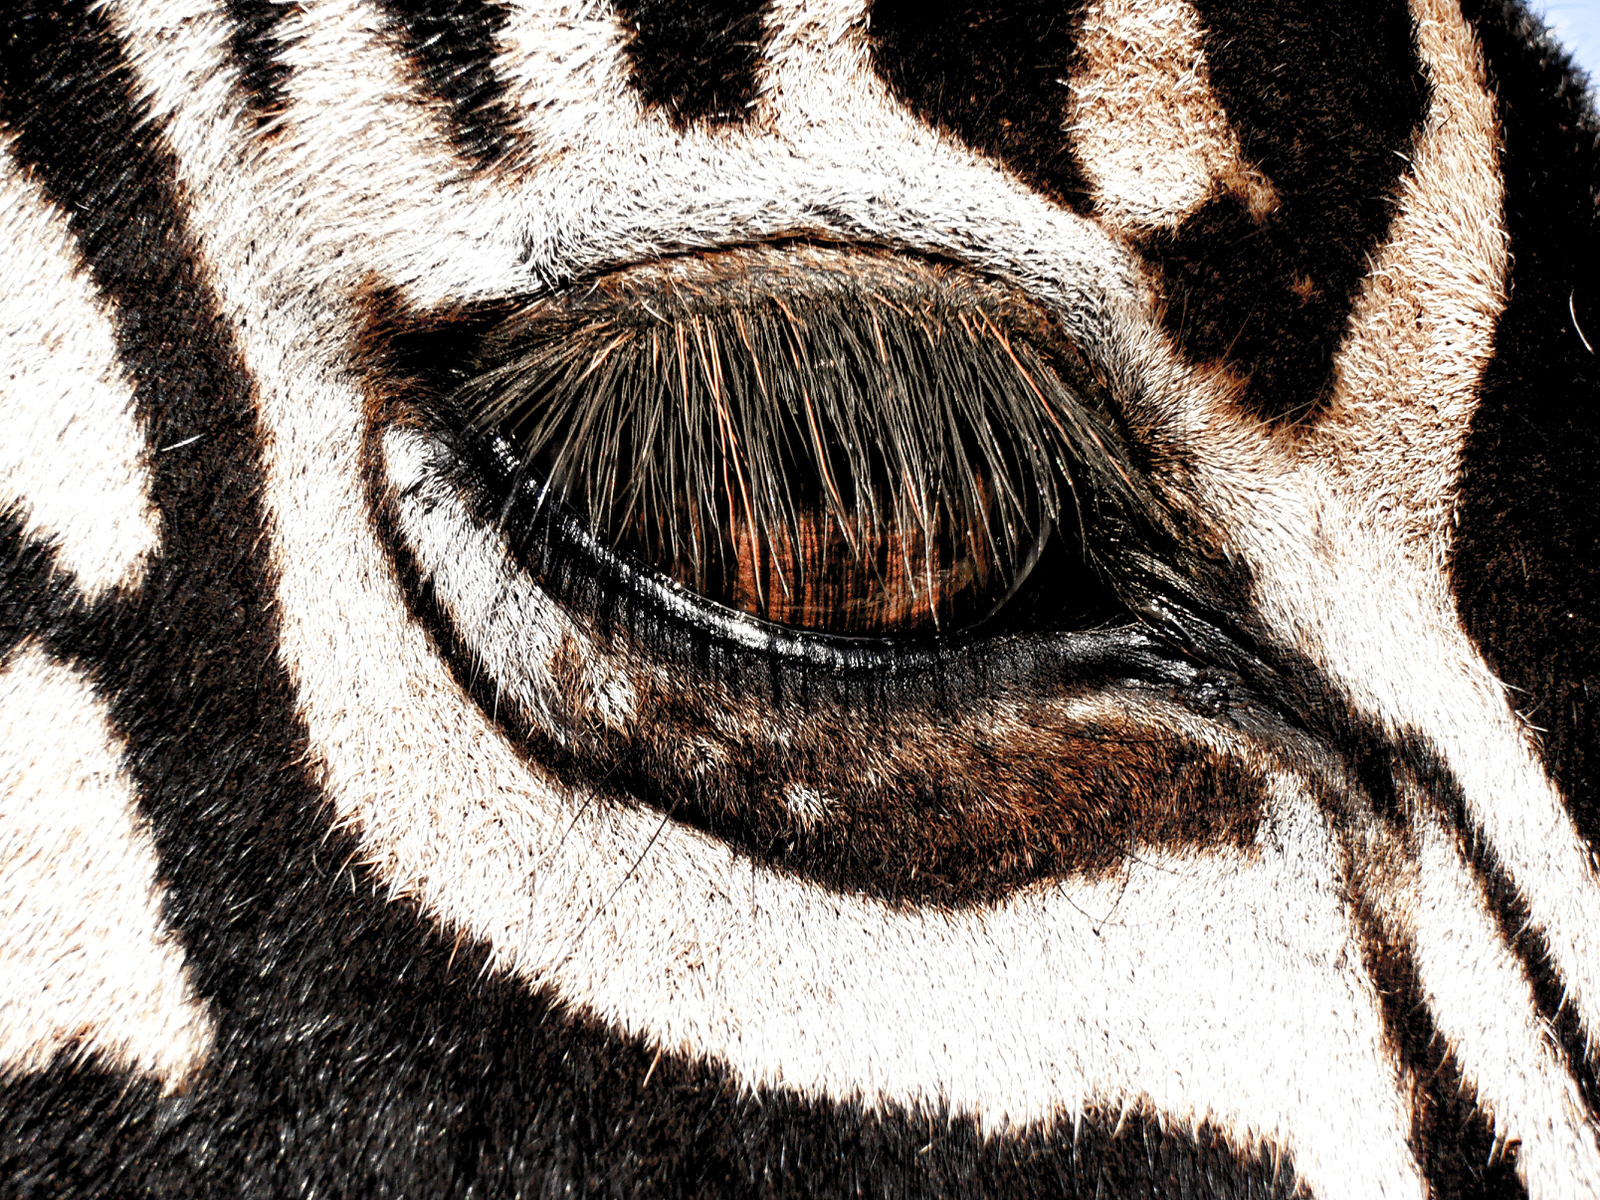 Kruger National Park safari photos - close up of zebra eye